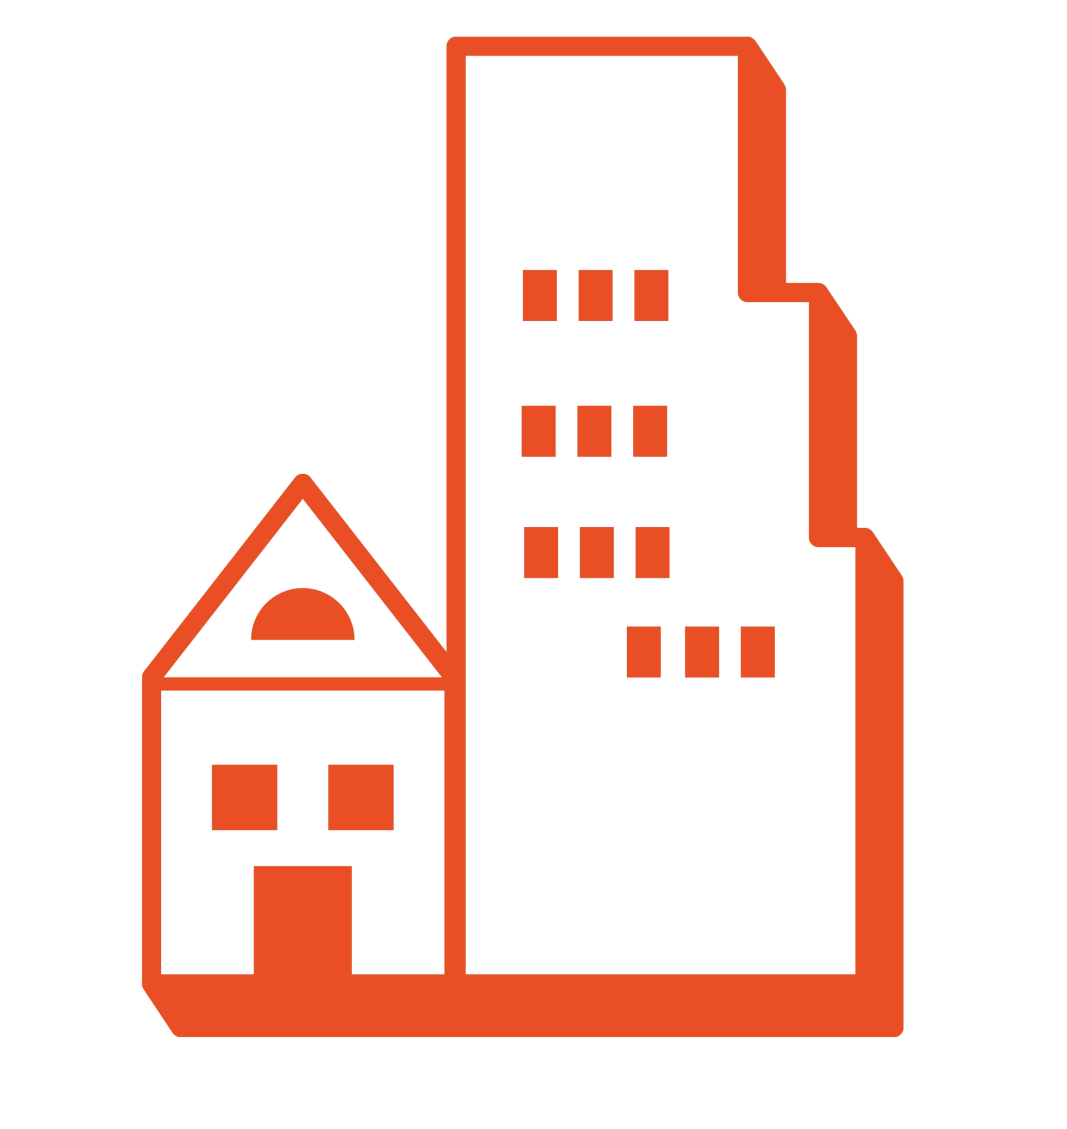 Fastighetsmarknadsrapport Kvartal 3 2014 Det har varit fortsatt positiv prisutveckling på bostadsmarknaden i riket och i storstadsregionerna, både för småhus och för bostadsrätter.